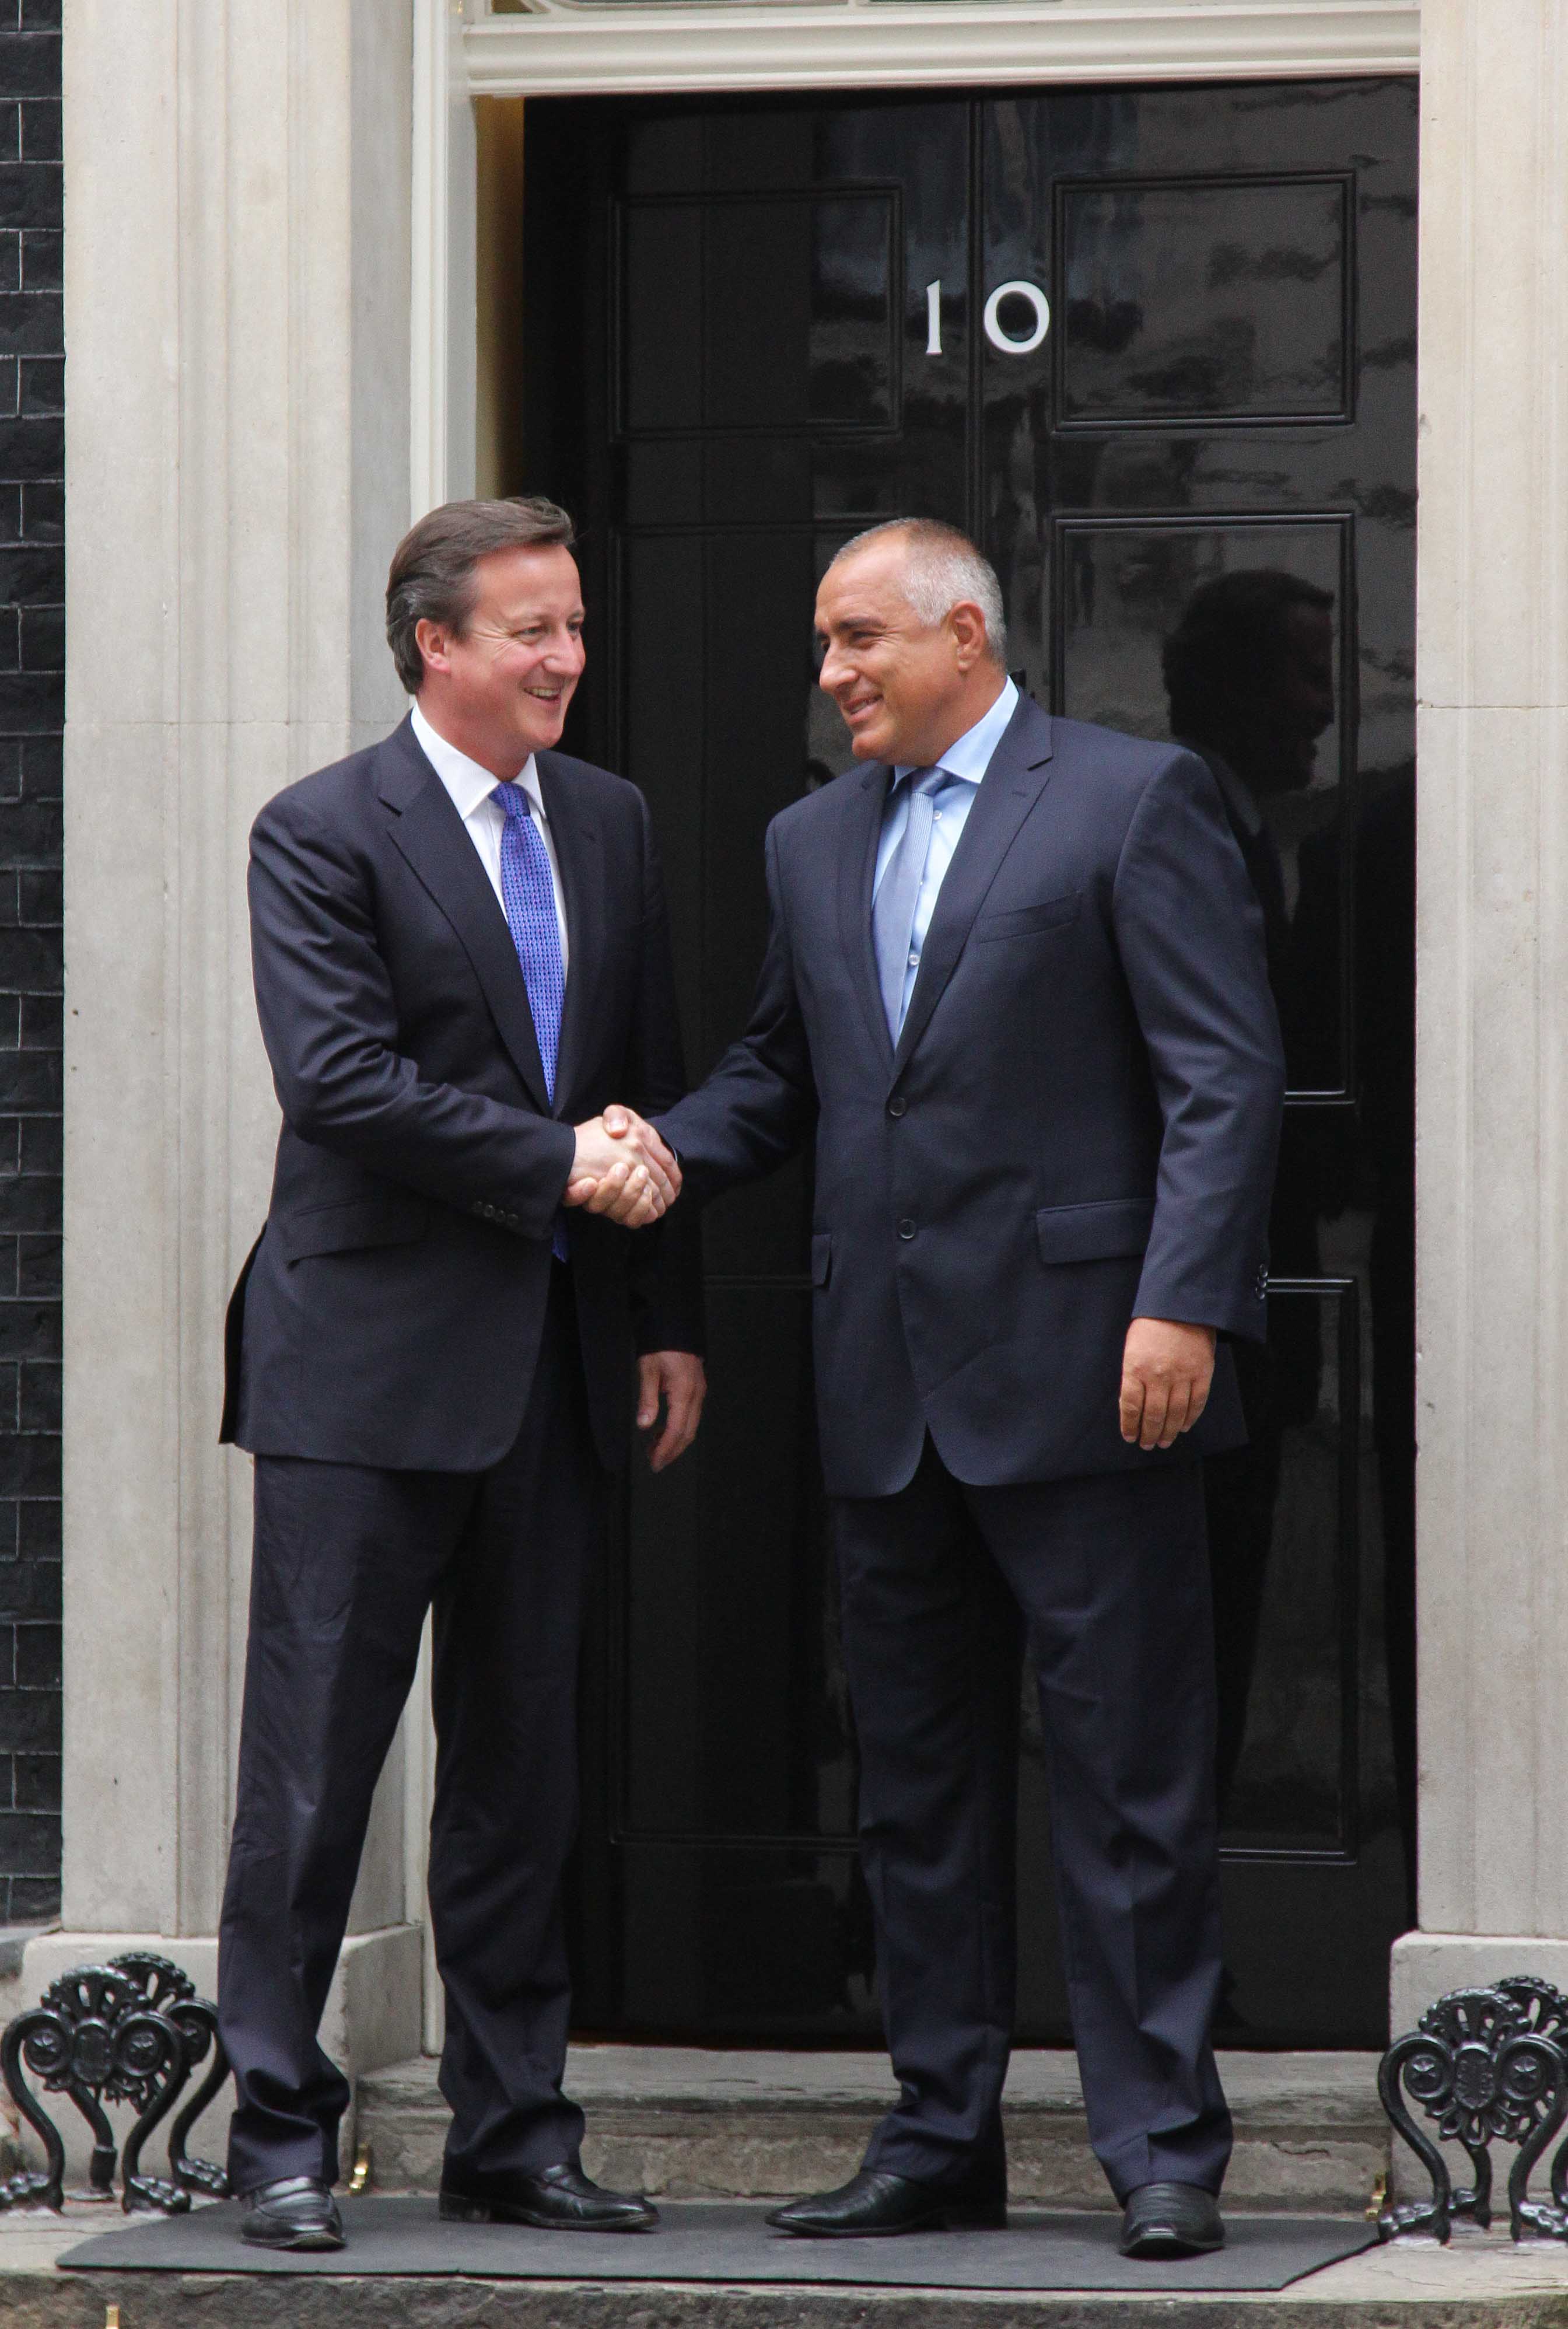 Борисов е на двудневно работно посещение в Обединеното кралство по покана на Камерън